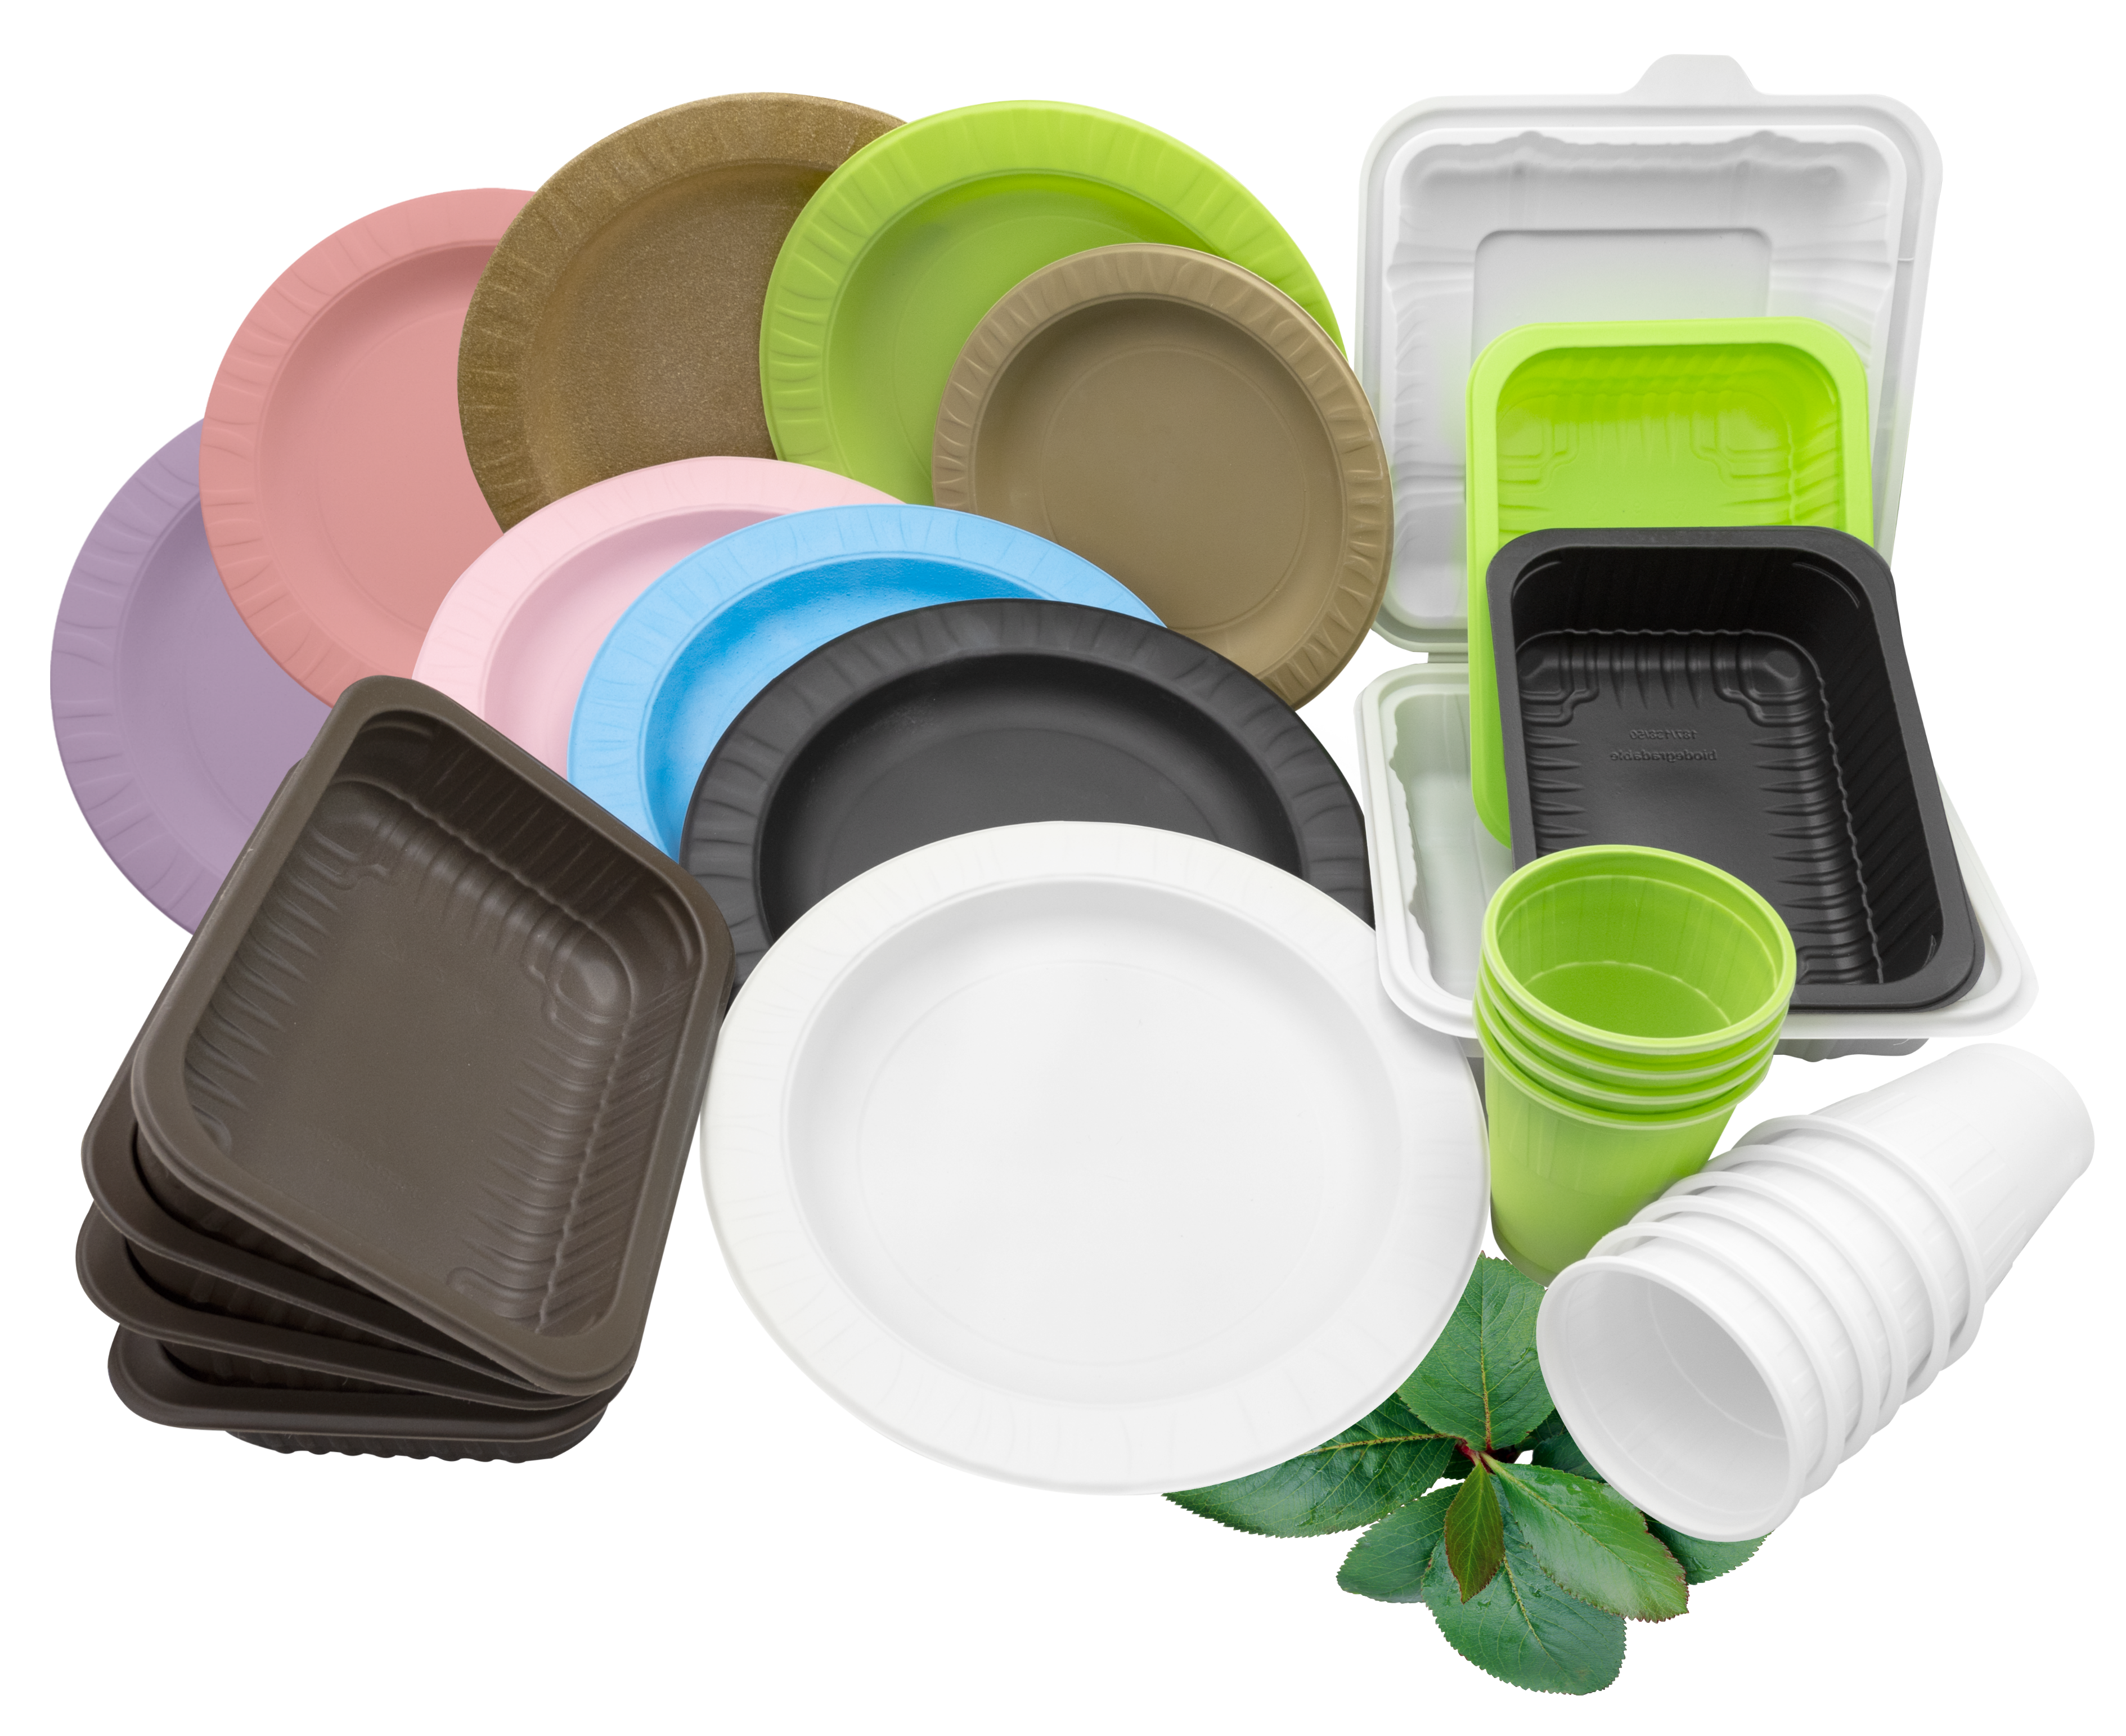 Купить одноразовую посуду пластиковую. Пластиковая посуда. Пластмассовая одноразовая посуда. Одноразовая посуда из пластика. Биоразлагаемая одноразовая посуда.